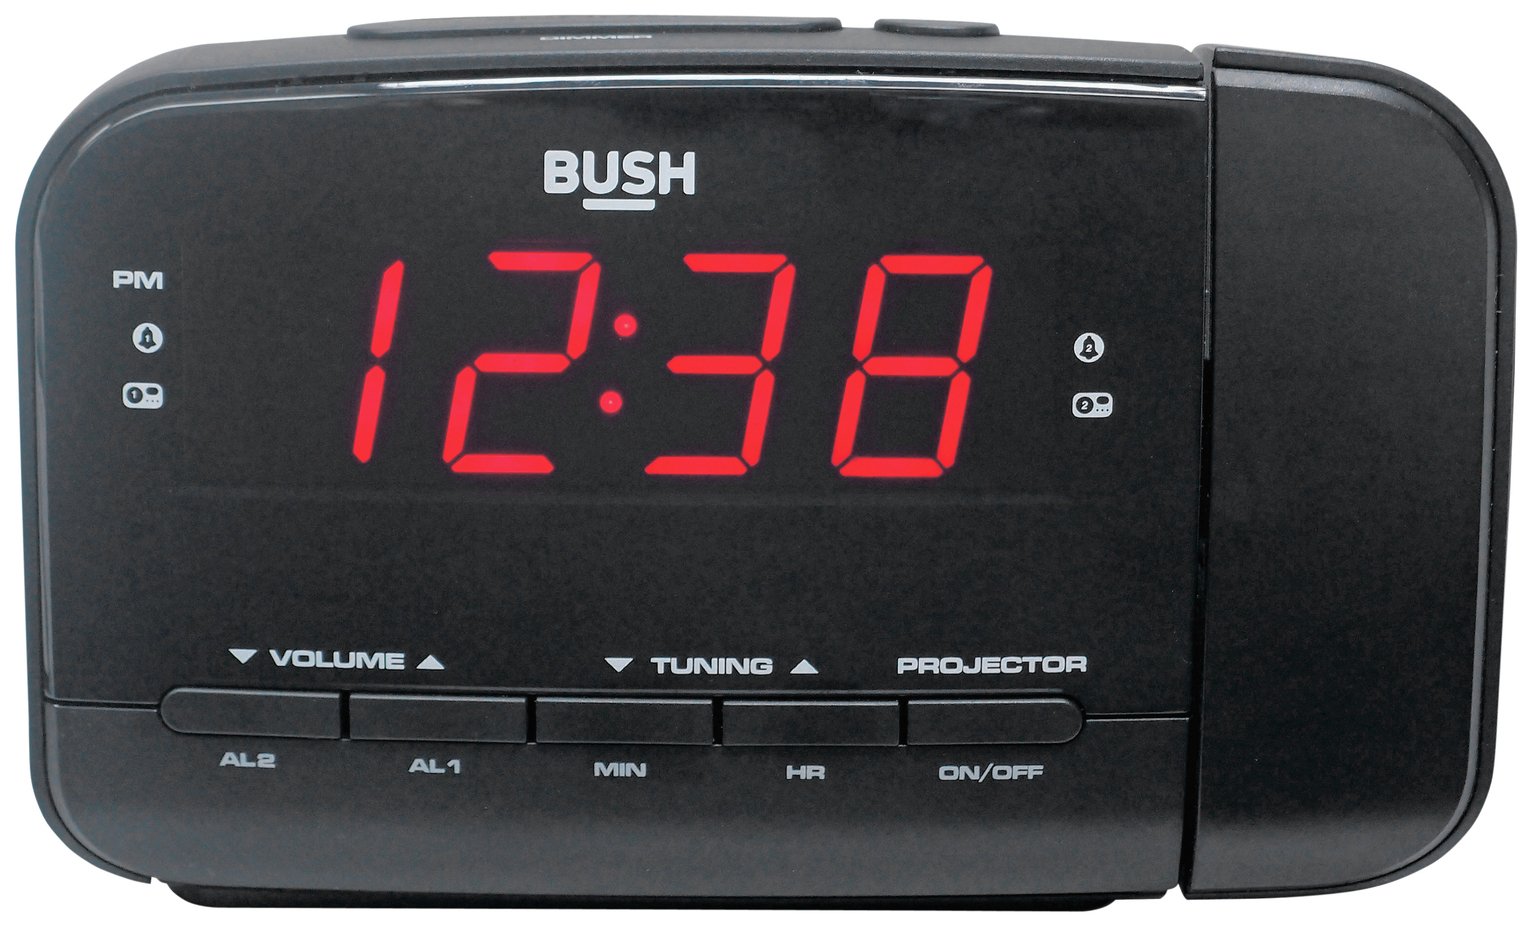 Bush Projection Alarm Clock Review